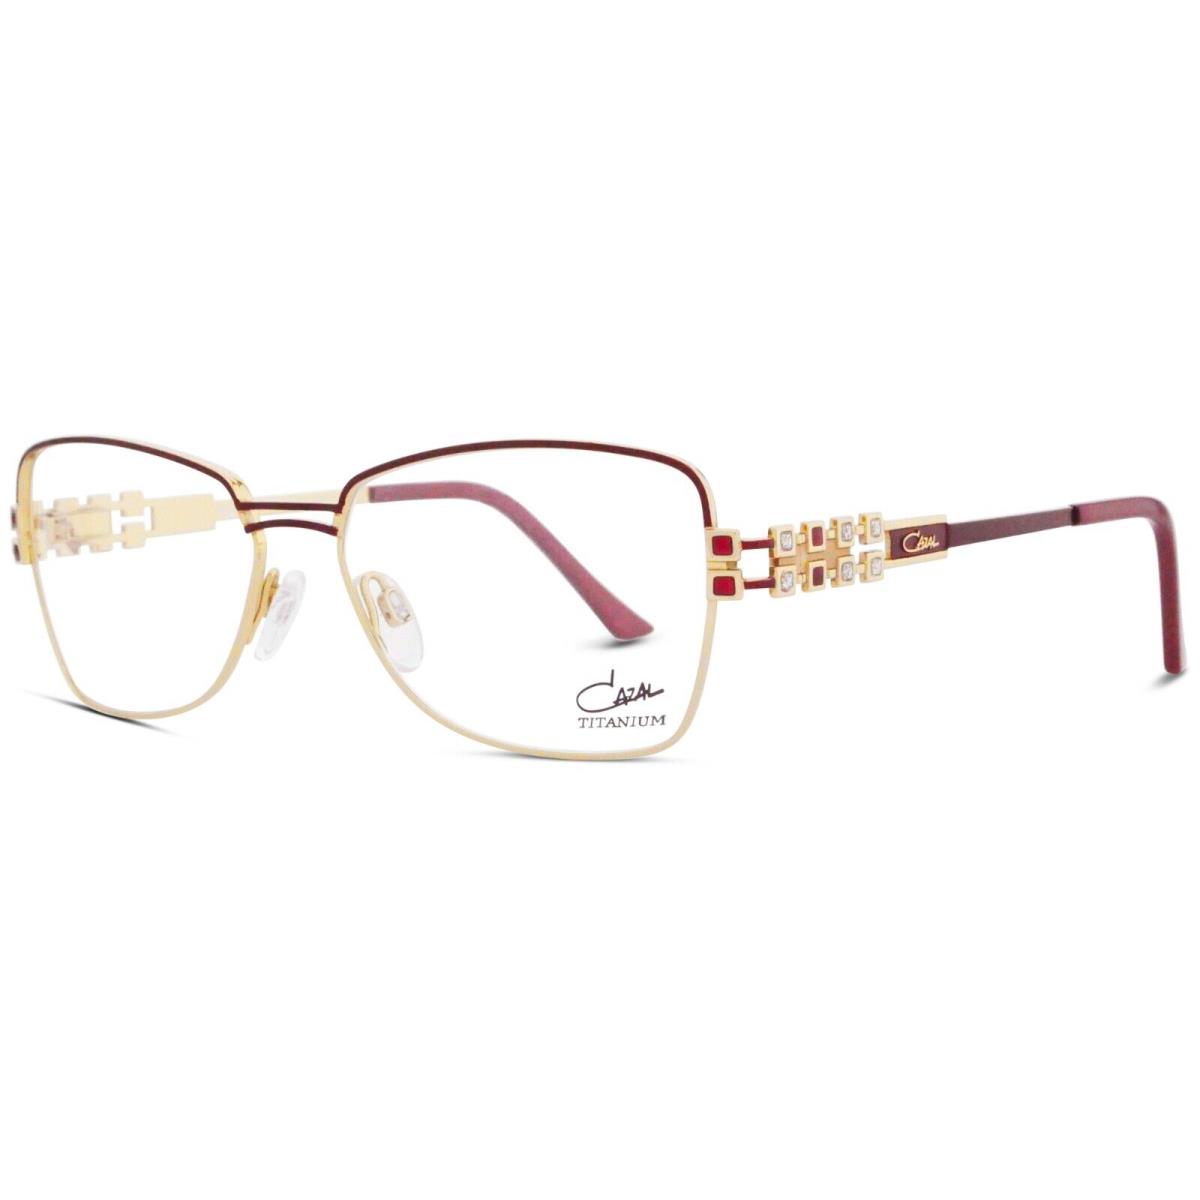 Cazal 4289 Burgundy 002 Eyeglasses